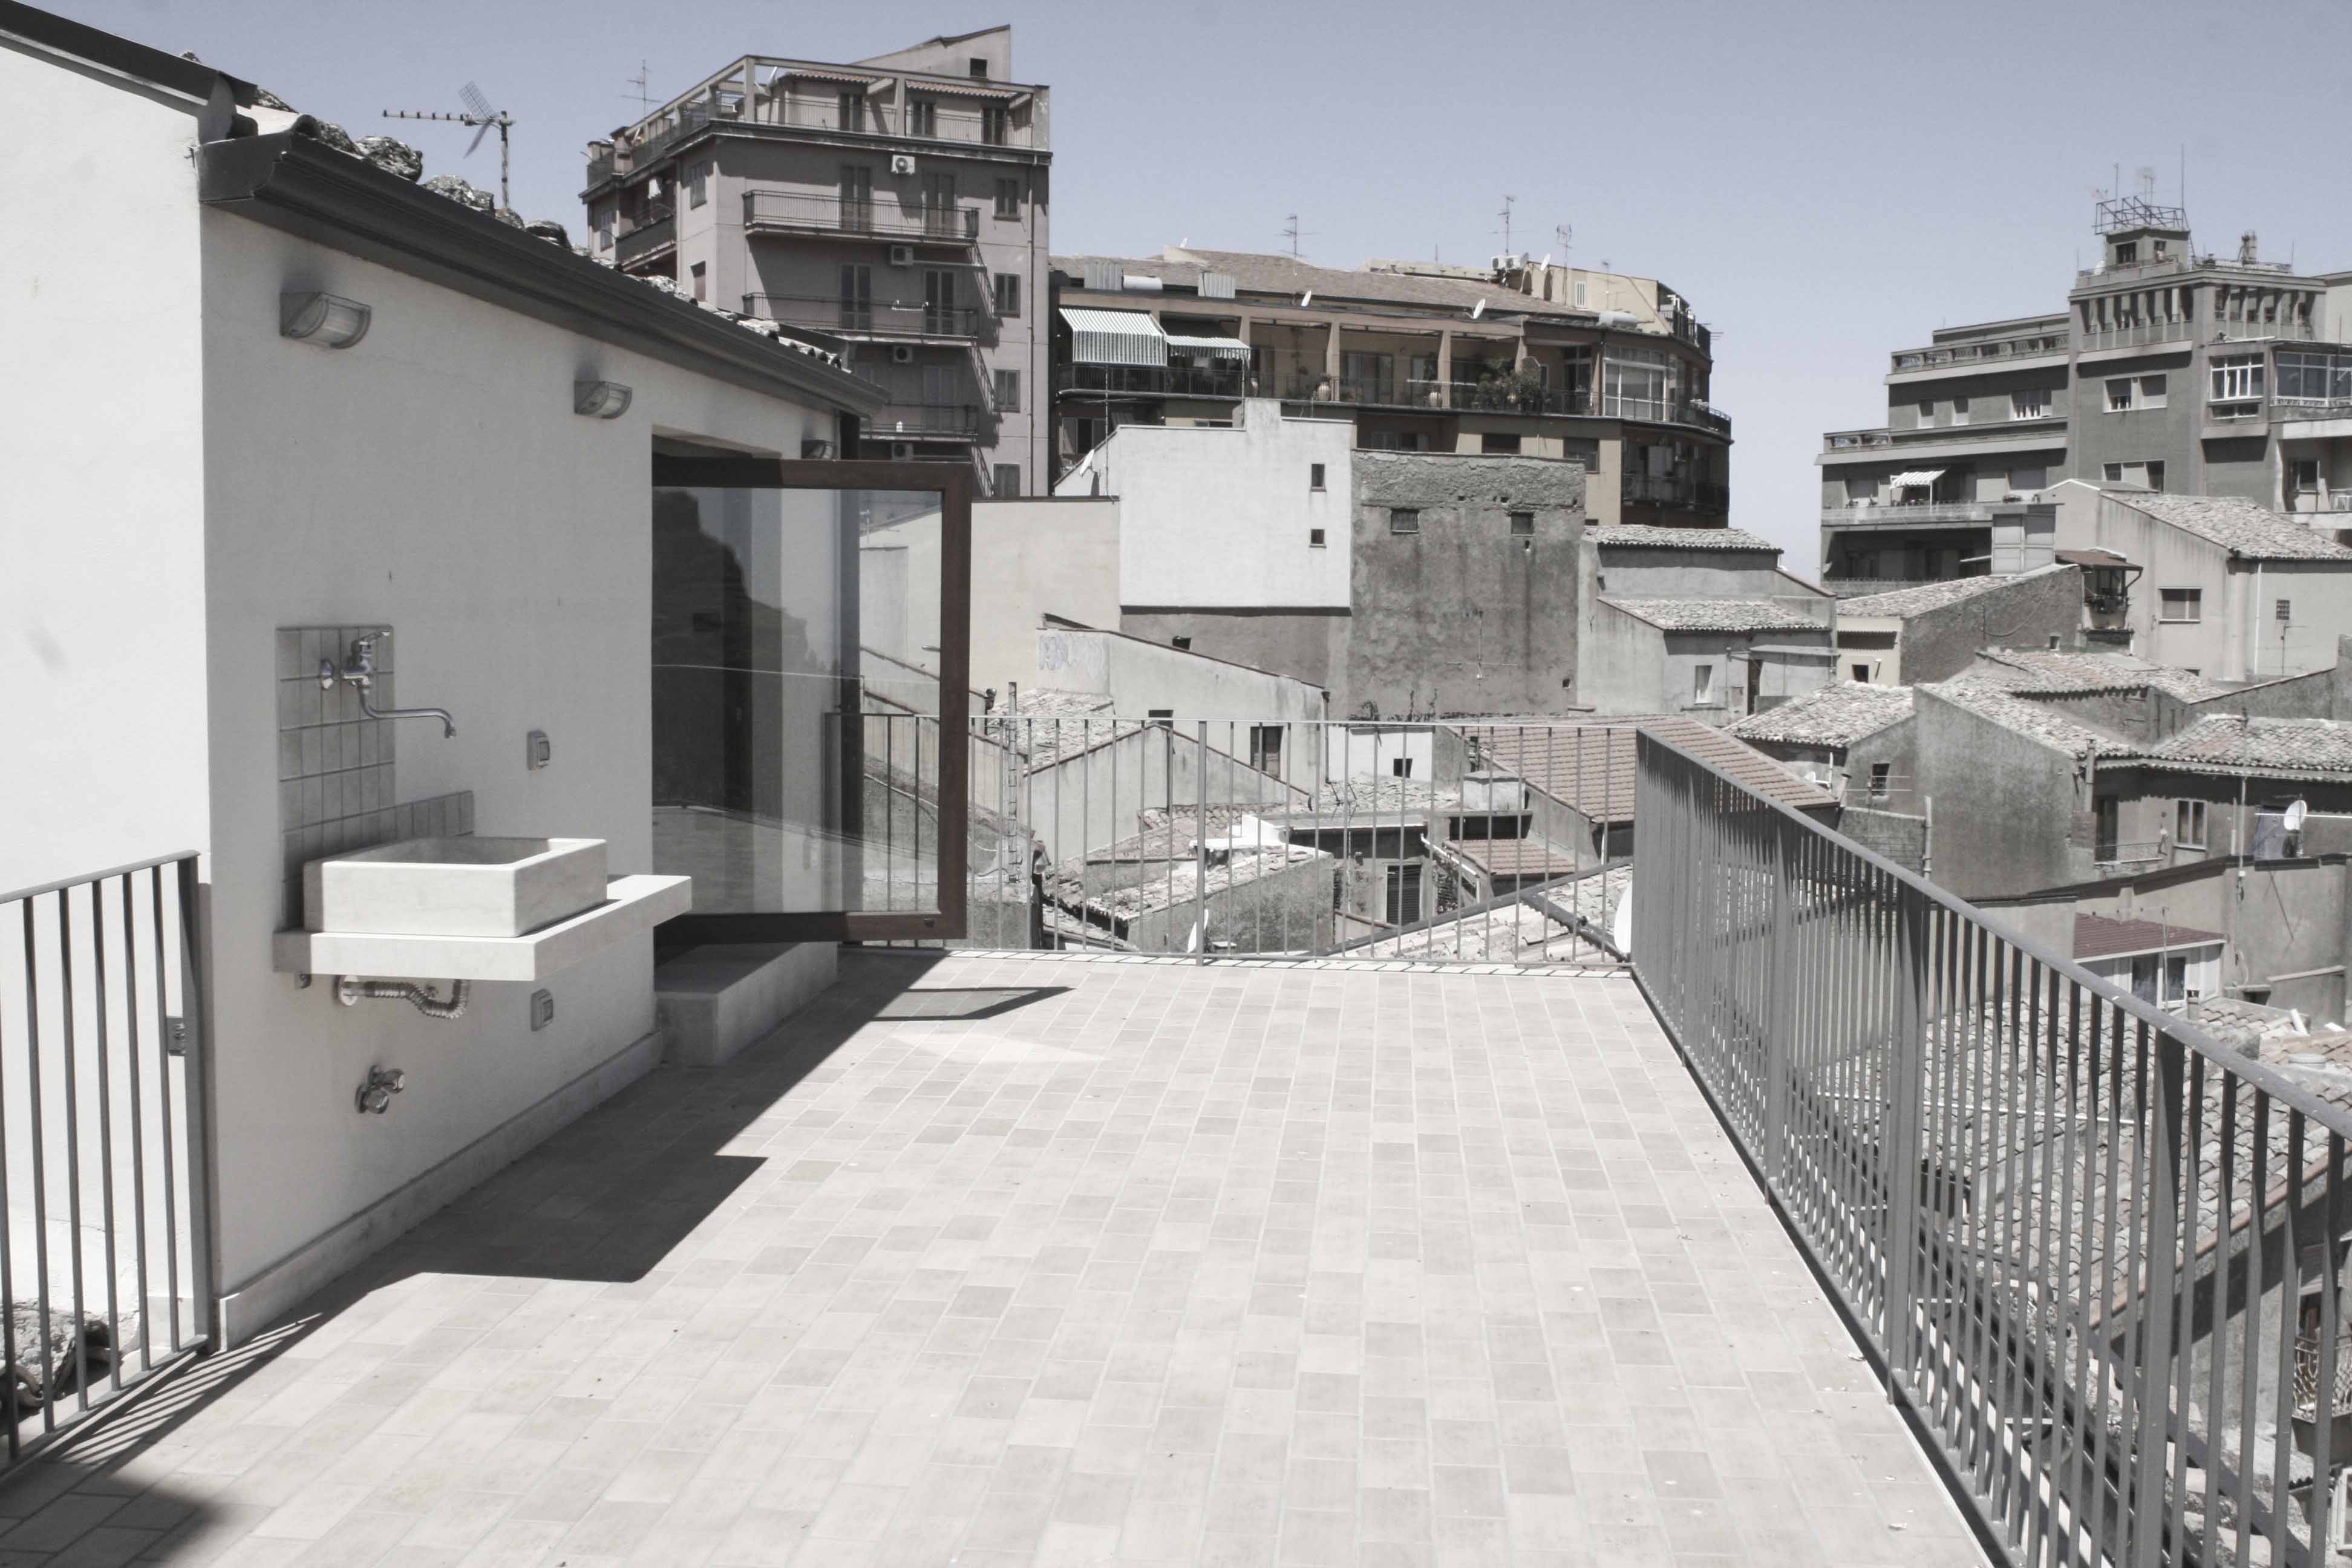 Sebastiano Fazzi Atelier di Architettura - casa studio | ristrutturazione nel centro storico di Enna